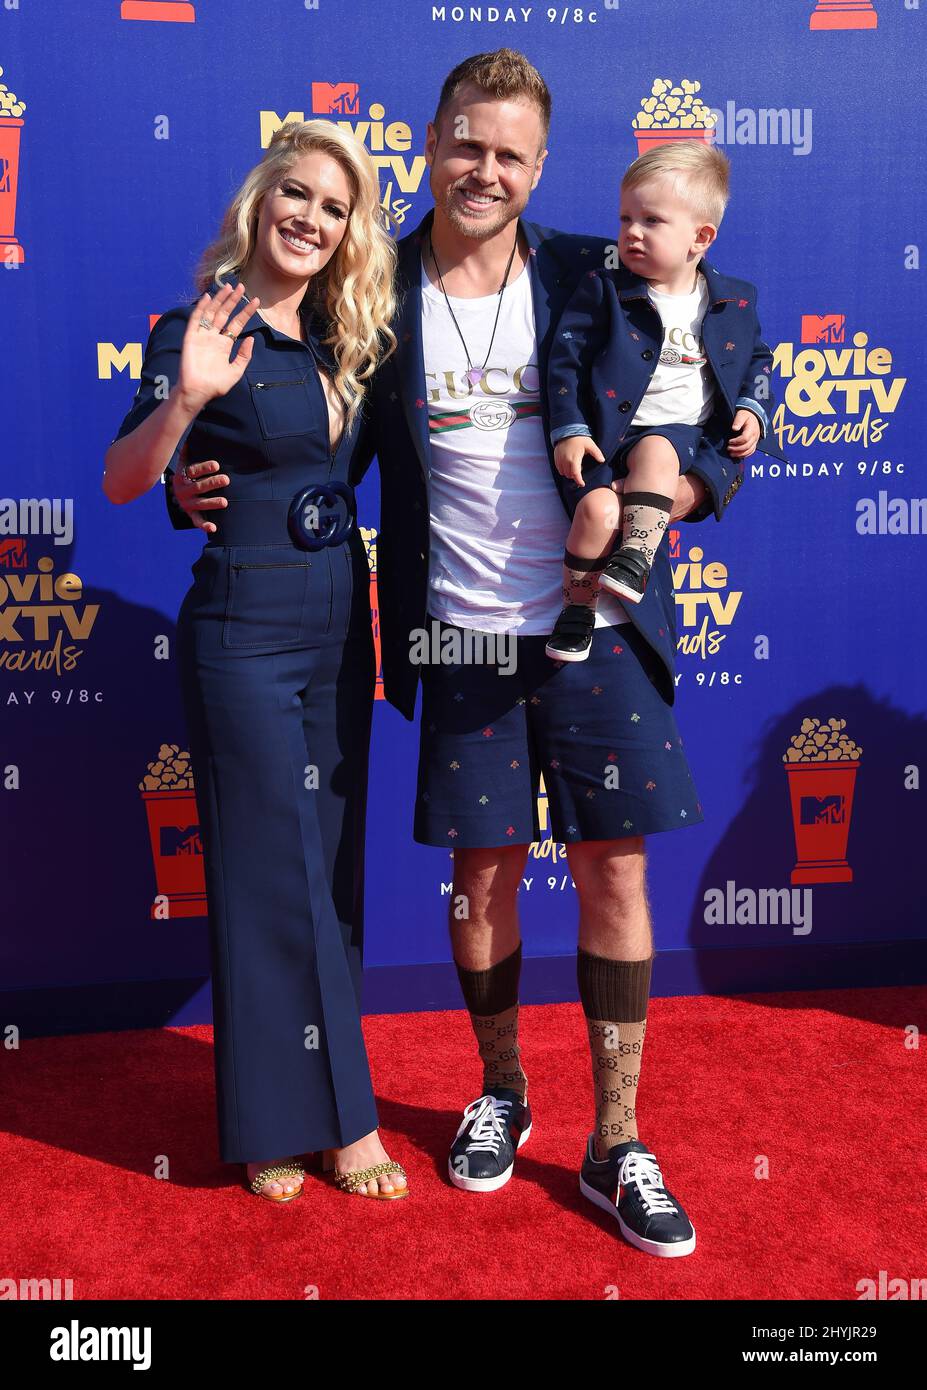 Heidi Montag, Spencer Pratt and Gunner Stone arriving to the MTV Movie & TV Awards 2019 at Barker Hanger on June 15, 2019 in Santa Monica Stock Photo